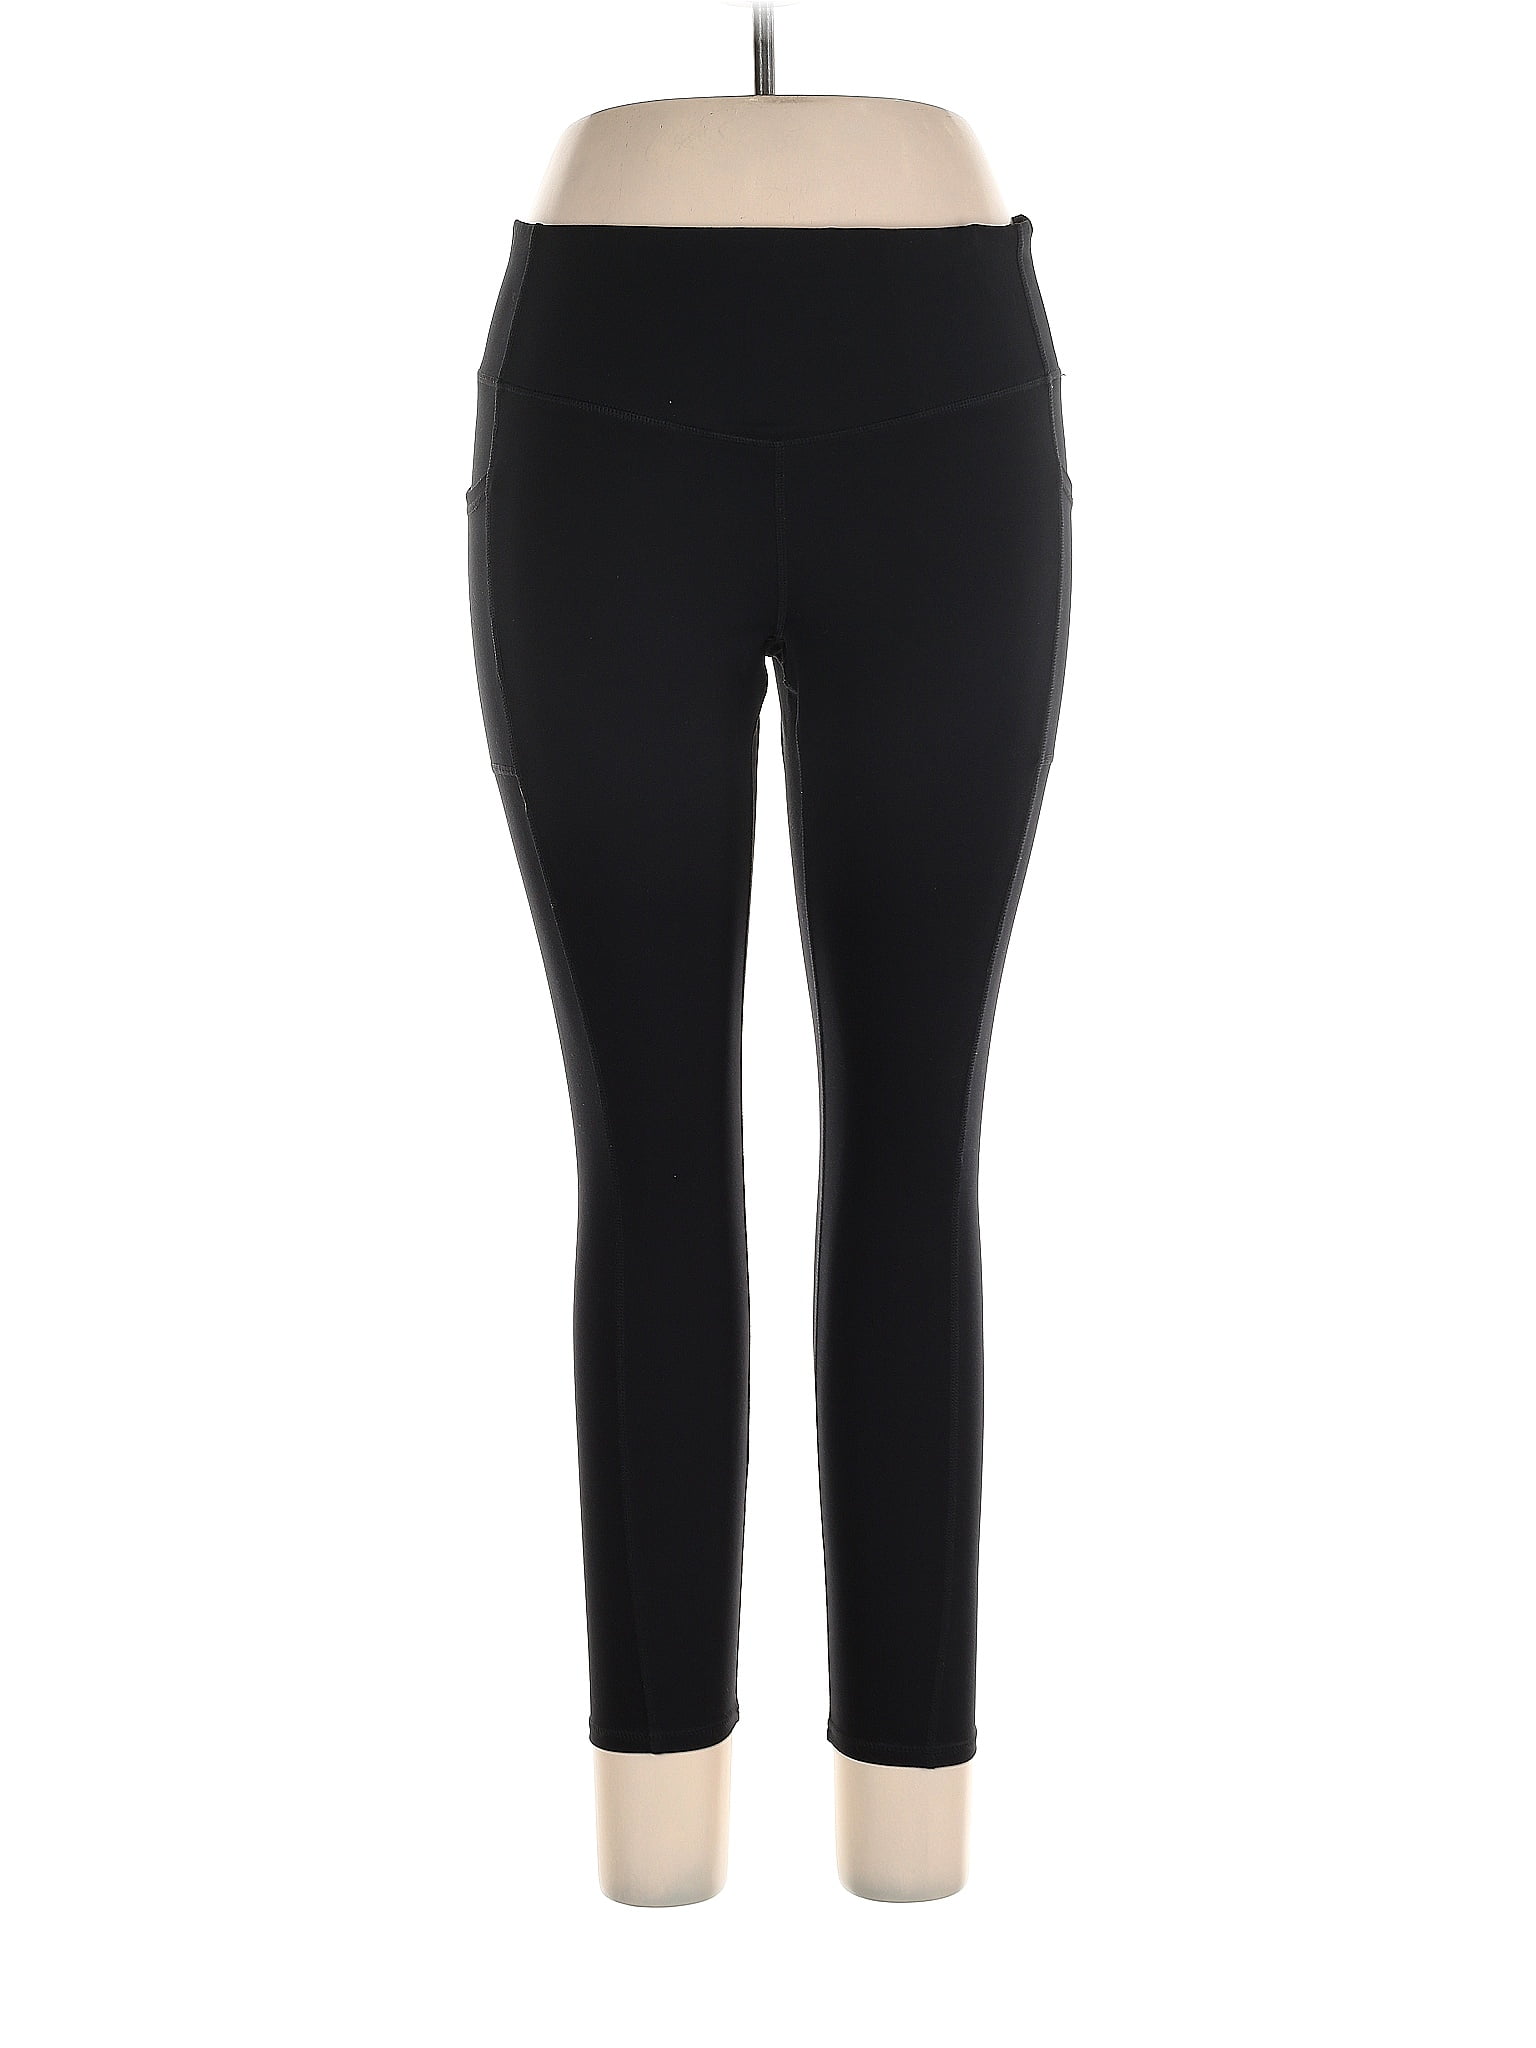 GAIAM Black Active Pants Size XL - 42% off